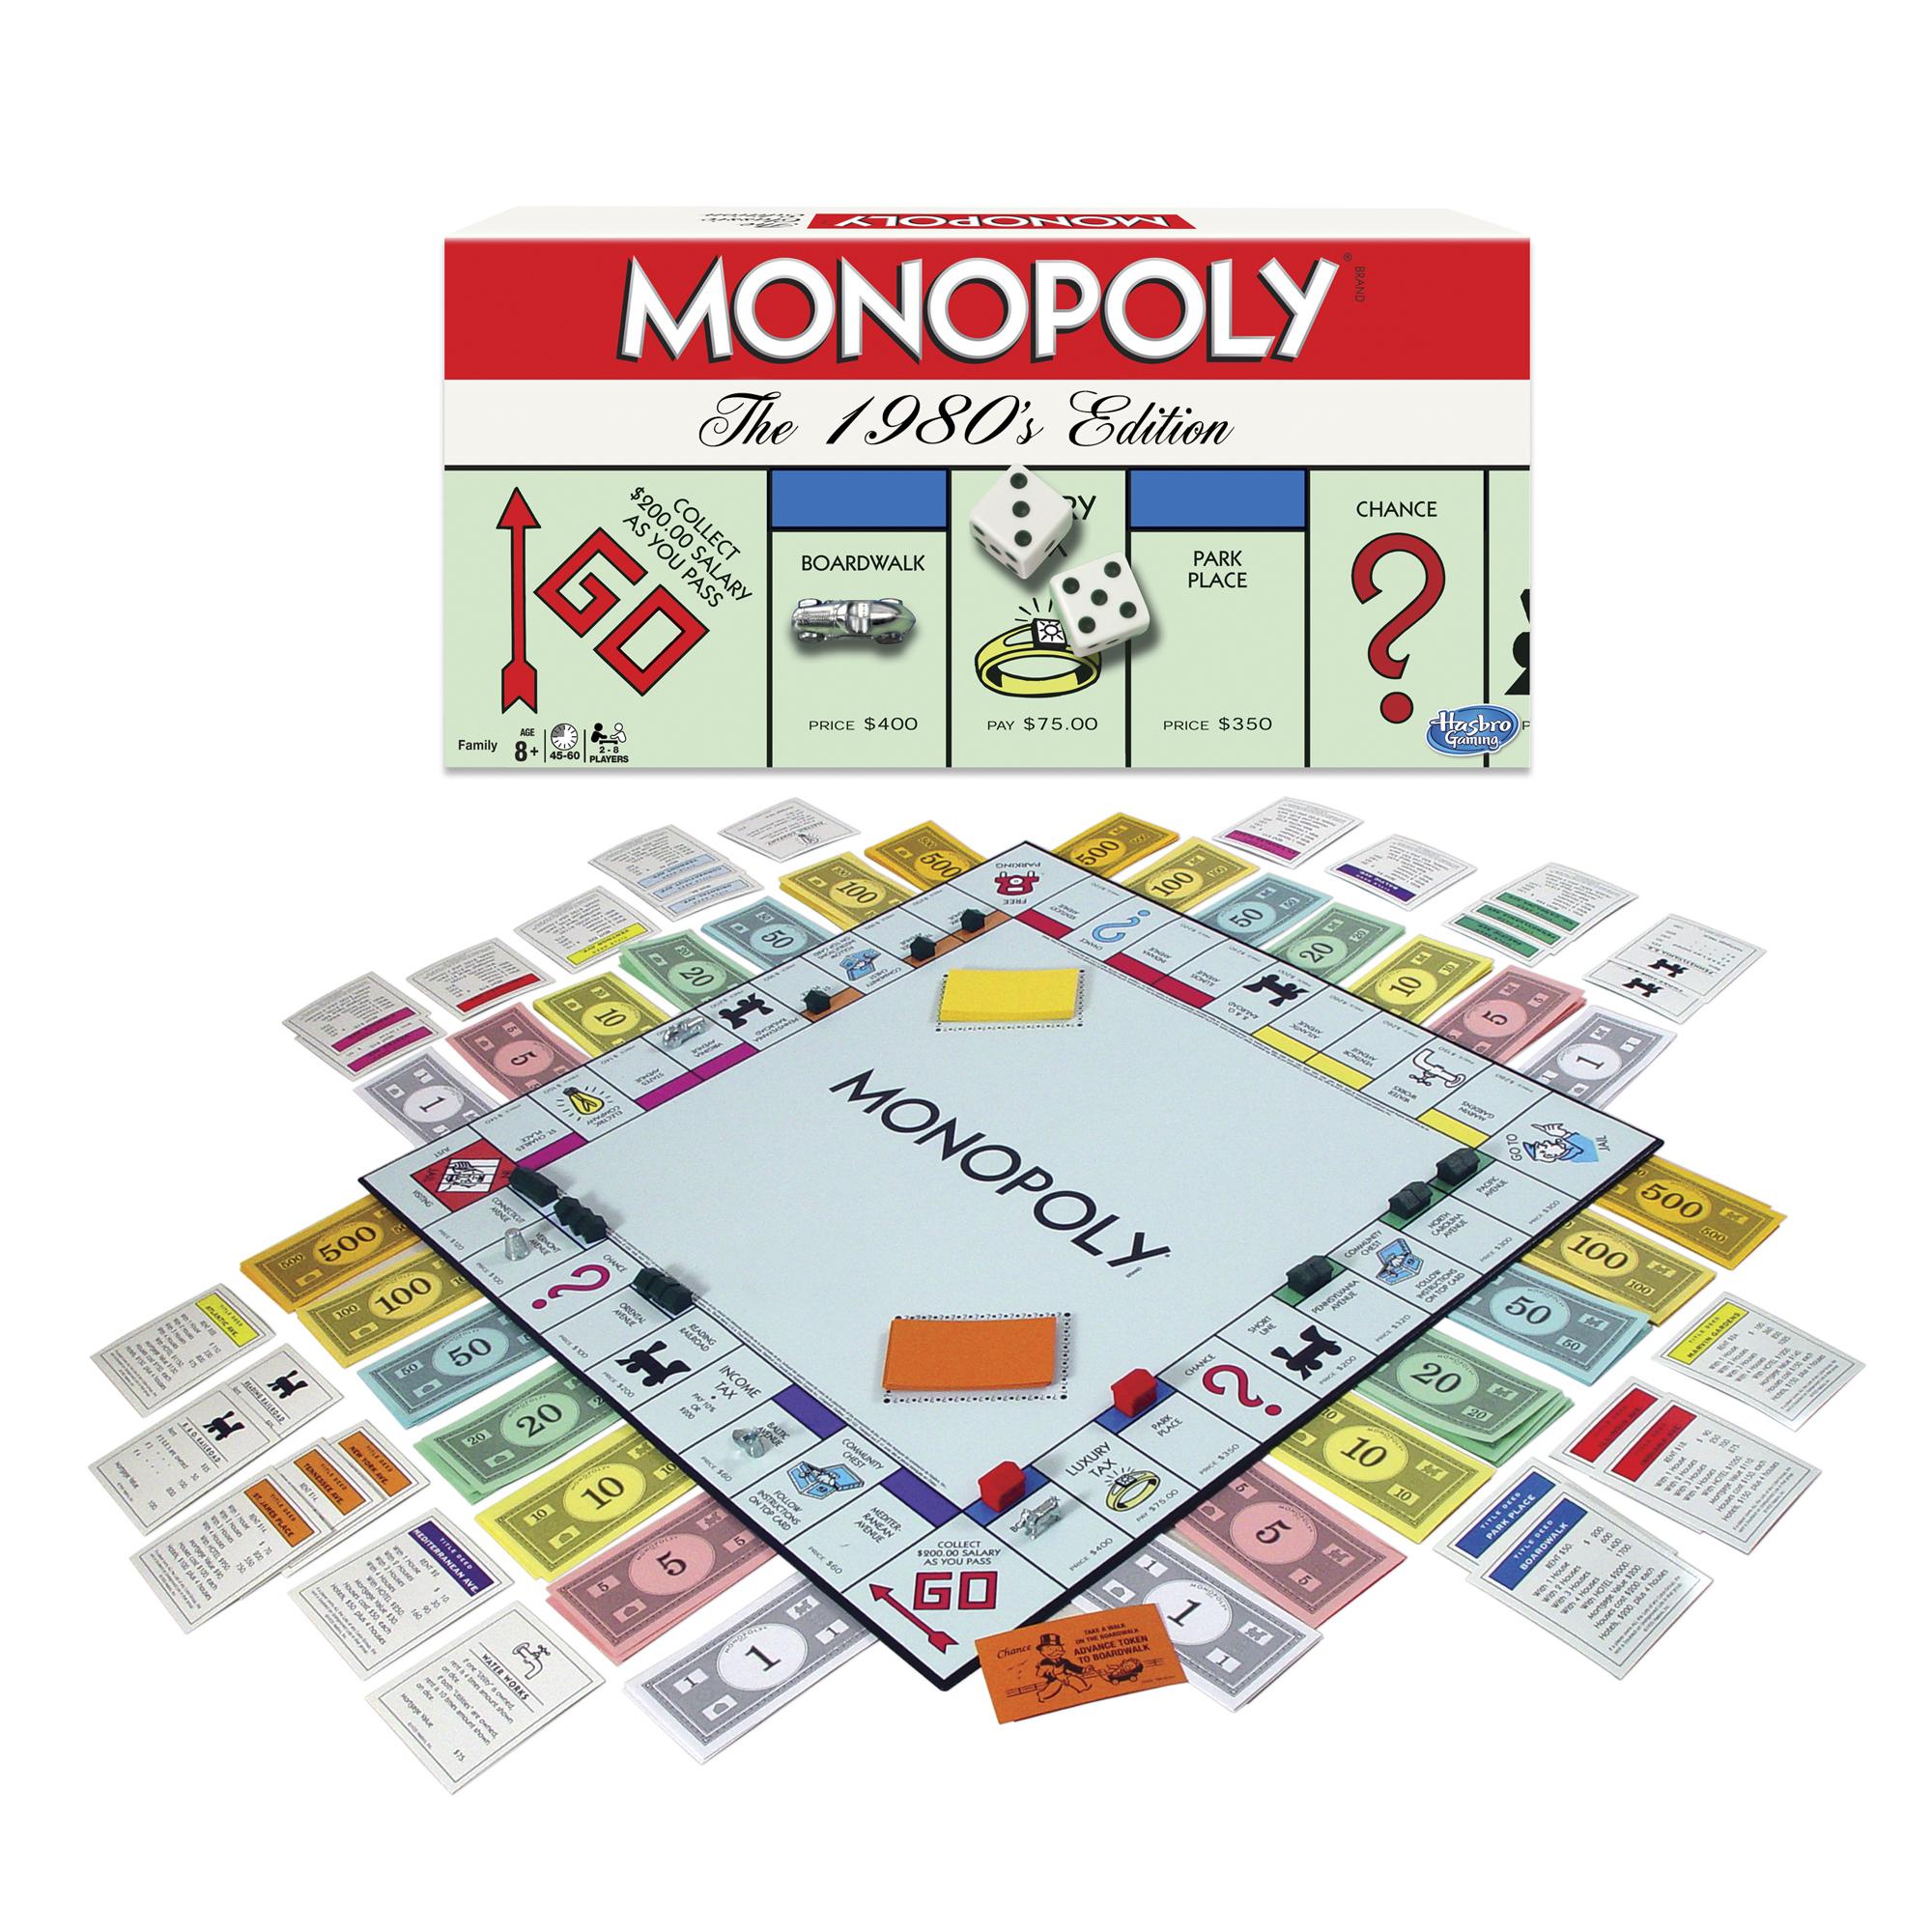 Brettspiel im Taschenformat Super Impulse Das kleinste Monopoly der Welt #5038 